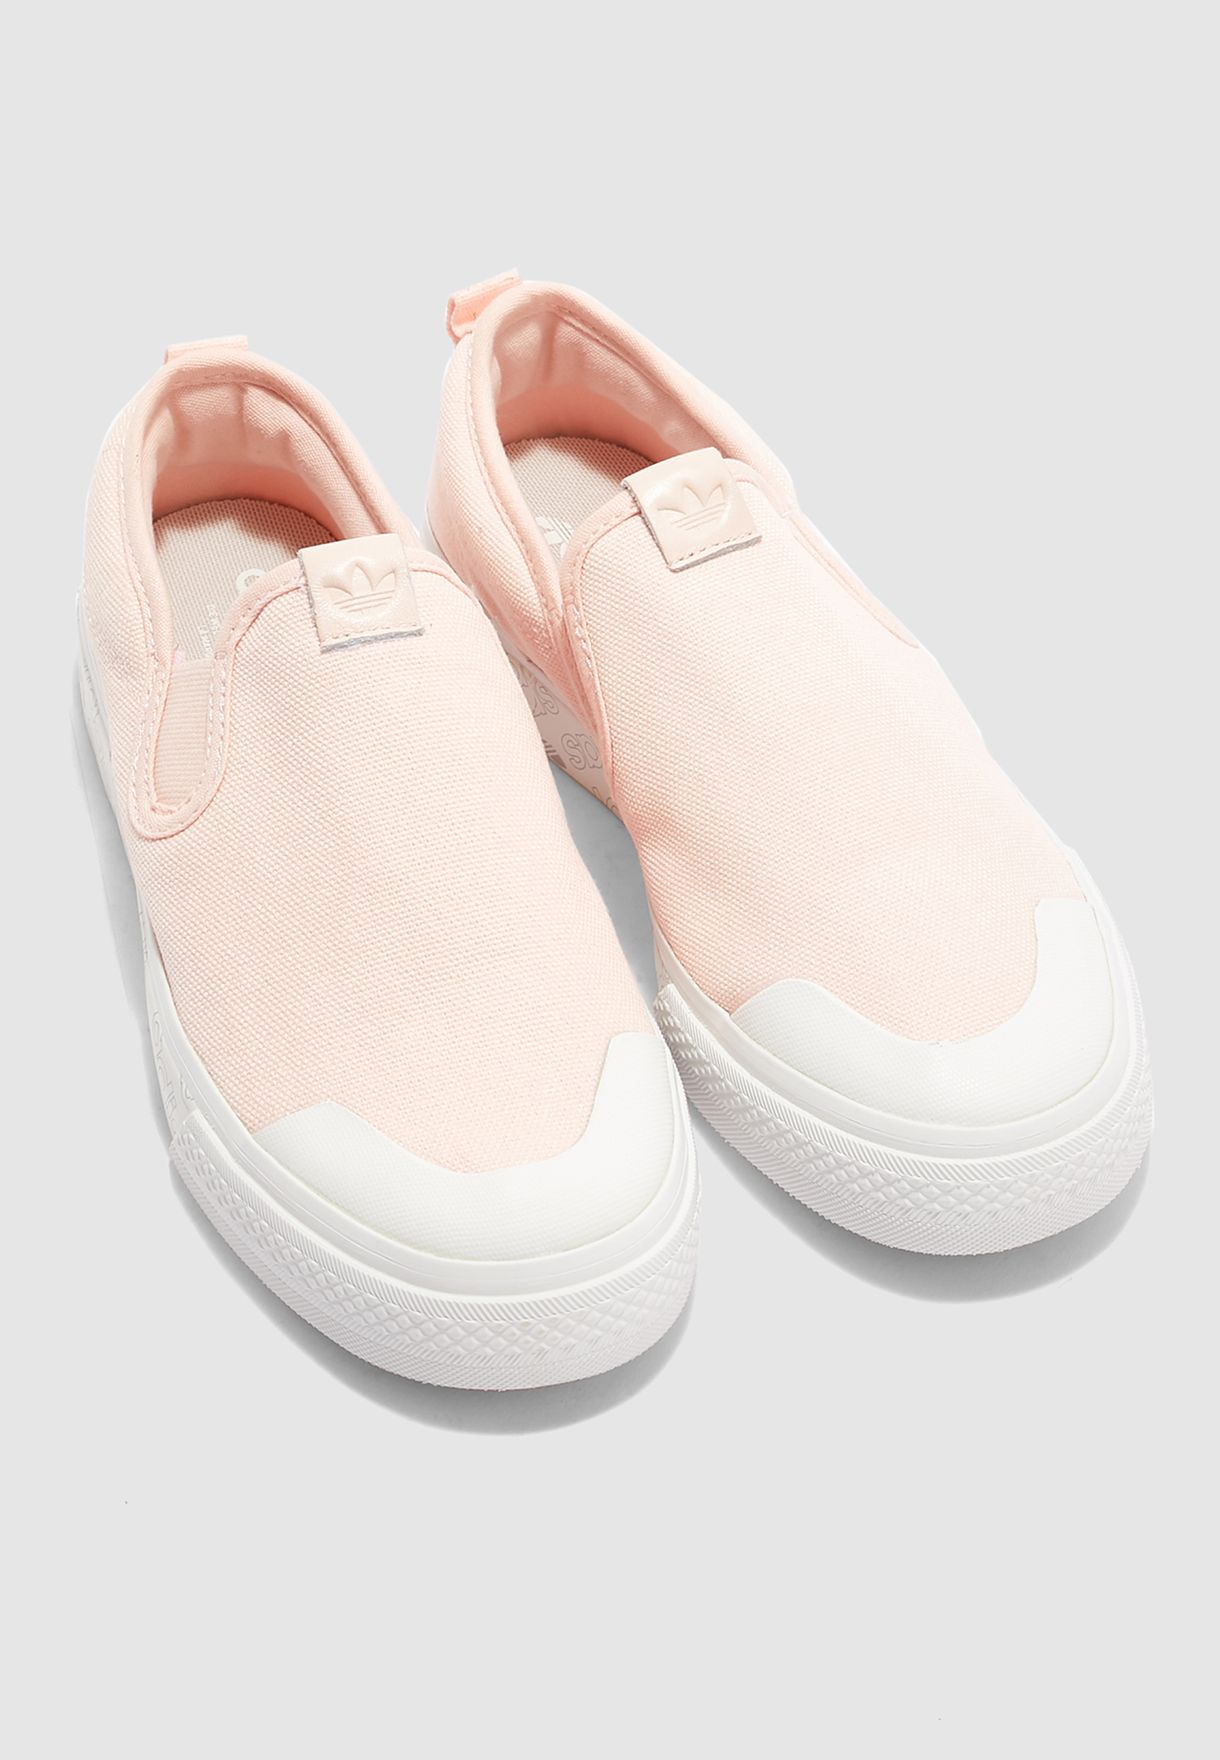 adidas originals nizza pink